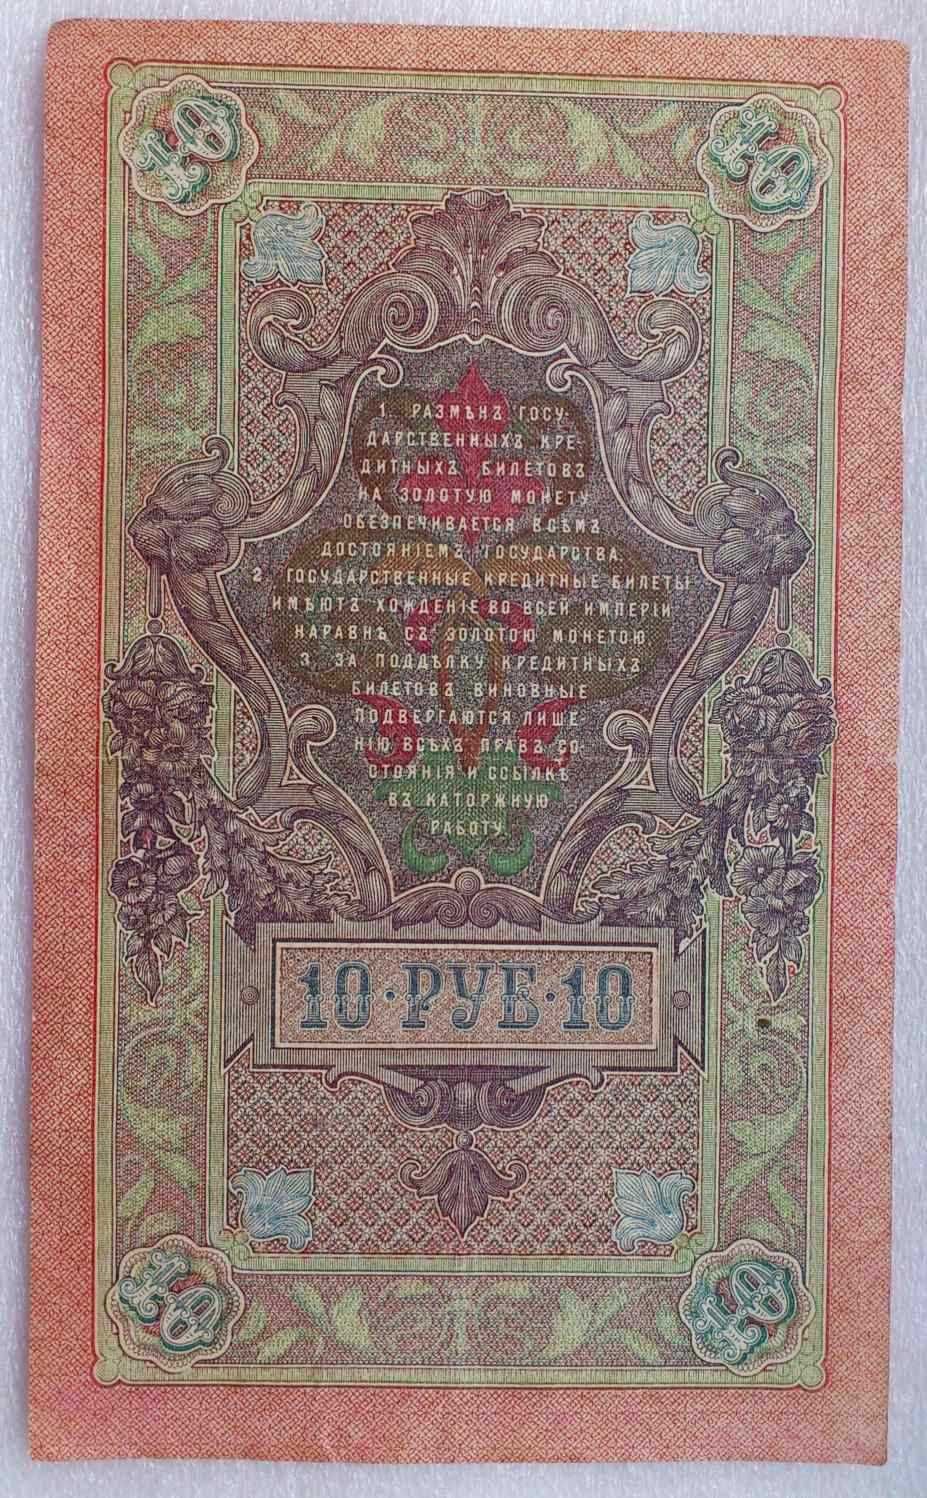 10 руб 1909 г. Государственный кредитный билет, Шипов, Бубякин. XF